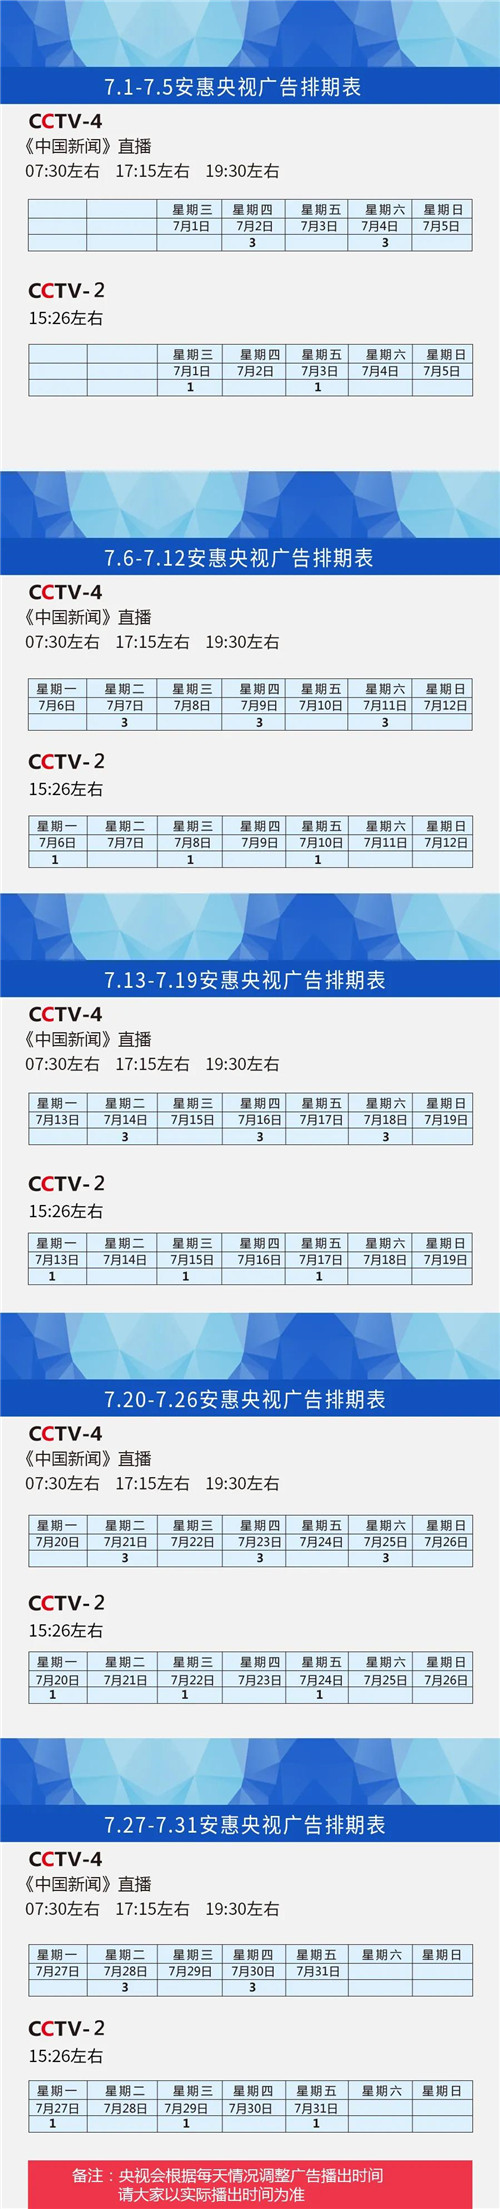 7月安惠央视宣传排期表来了